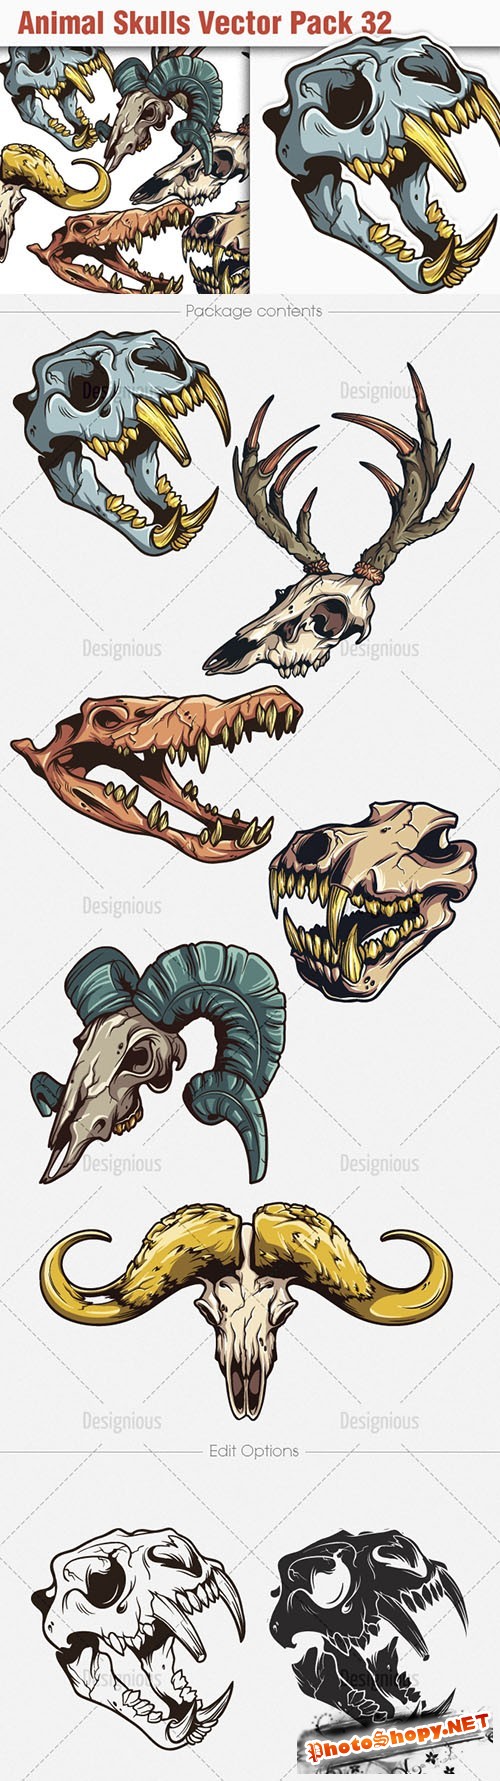 Animal Skulls Vector Illustrations Pack 32